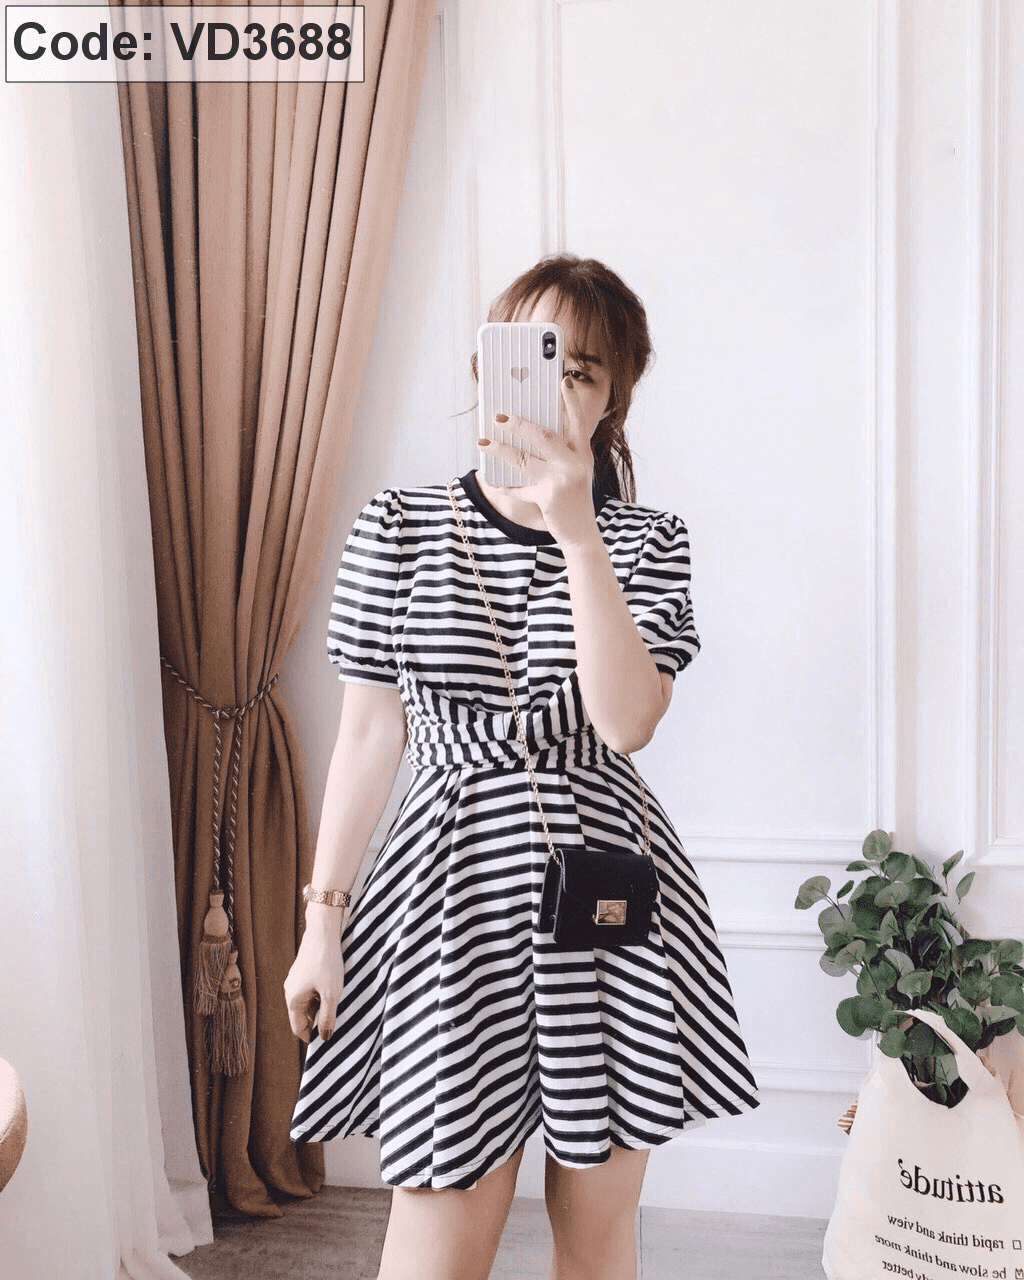 Taoxanh Studio - V1787 | Váy kẻ sọc đen trắng kèm đai, chất vải thô mịn với  họa tiết sọc tạo cảm giác form dáng thon gọn đi rất nhiều, phần cổ